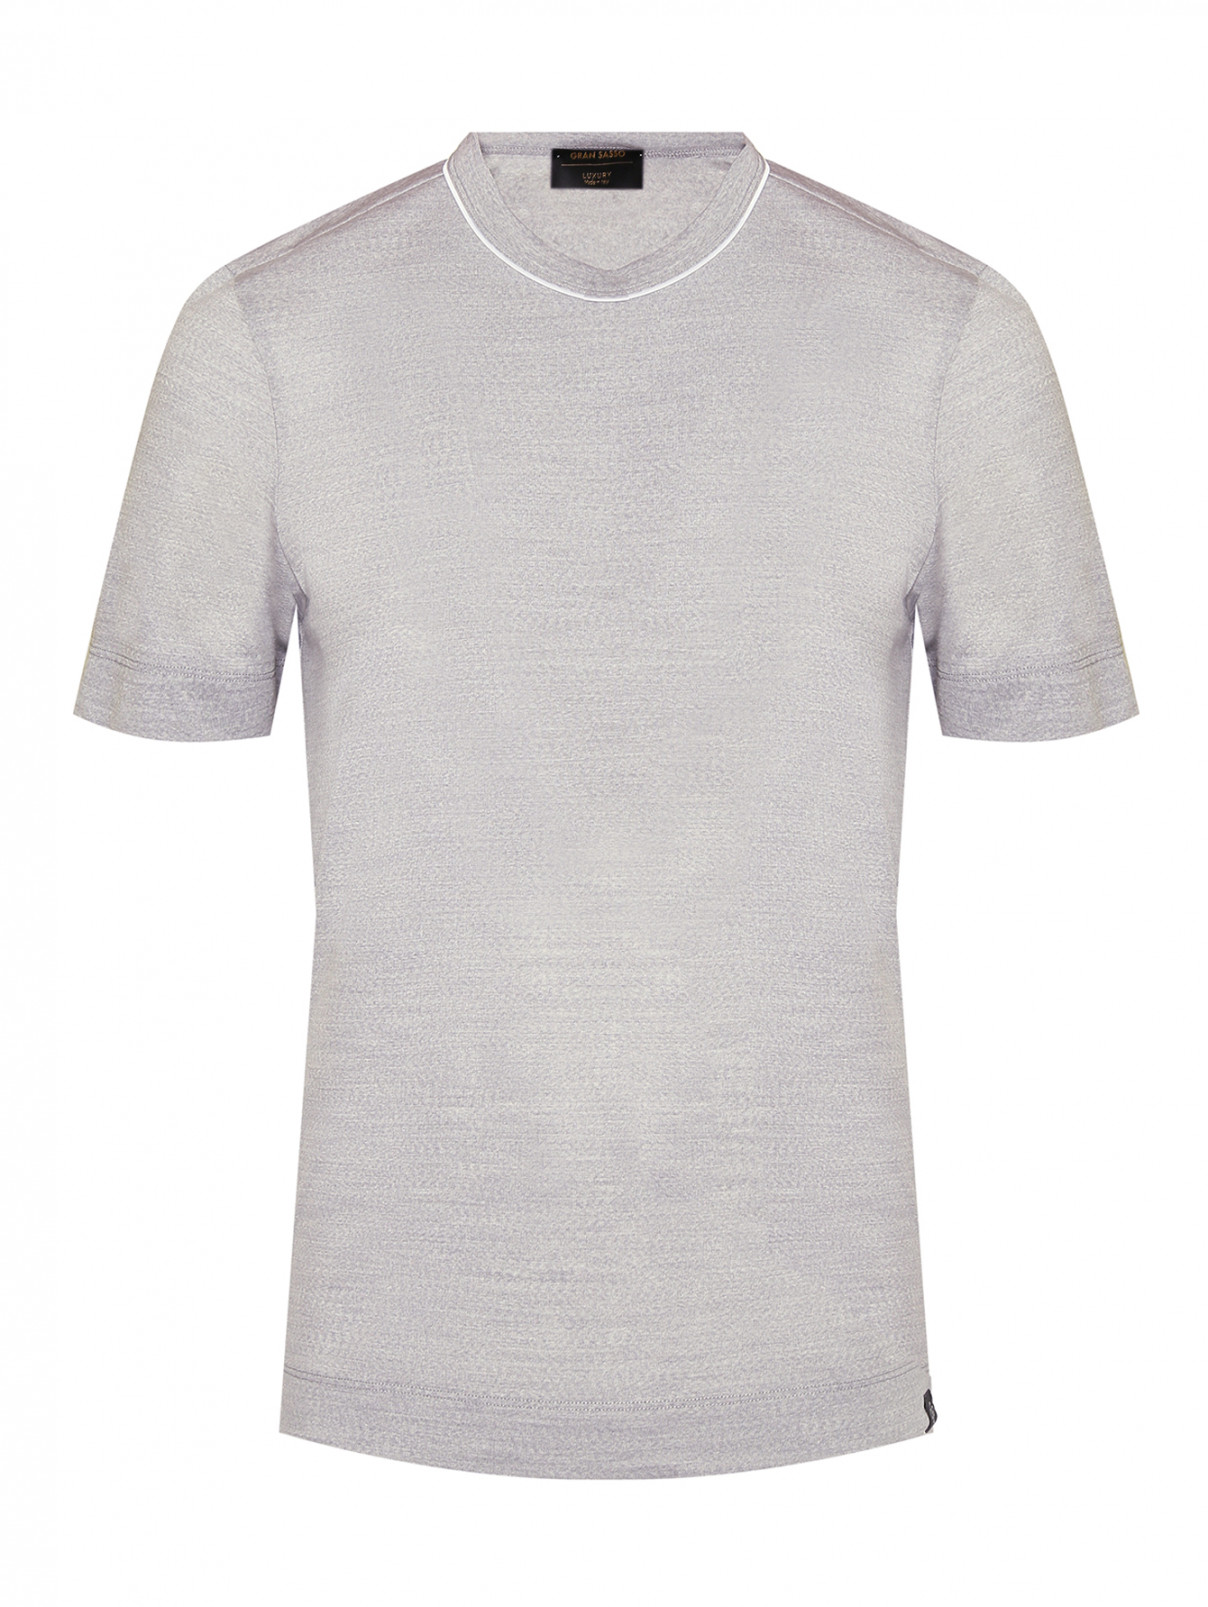 Однотонная футболка из шерсти Gran Sasso  –  Общий вид  – Цвет:  Серый